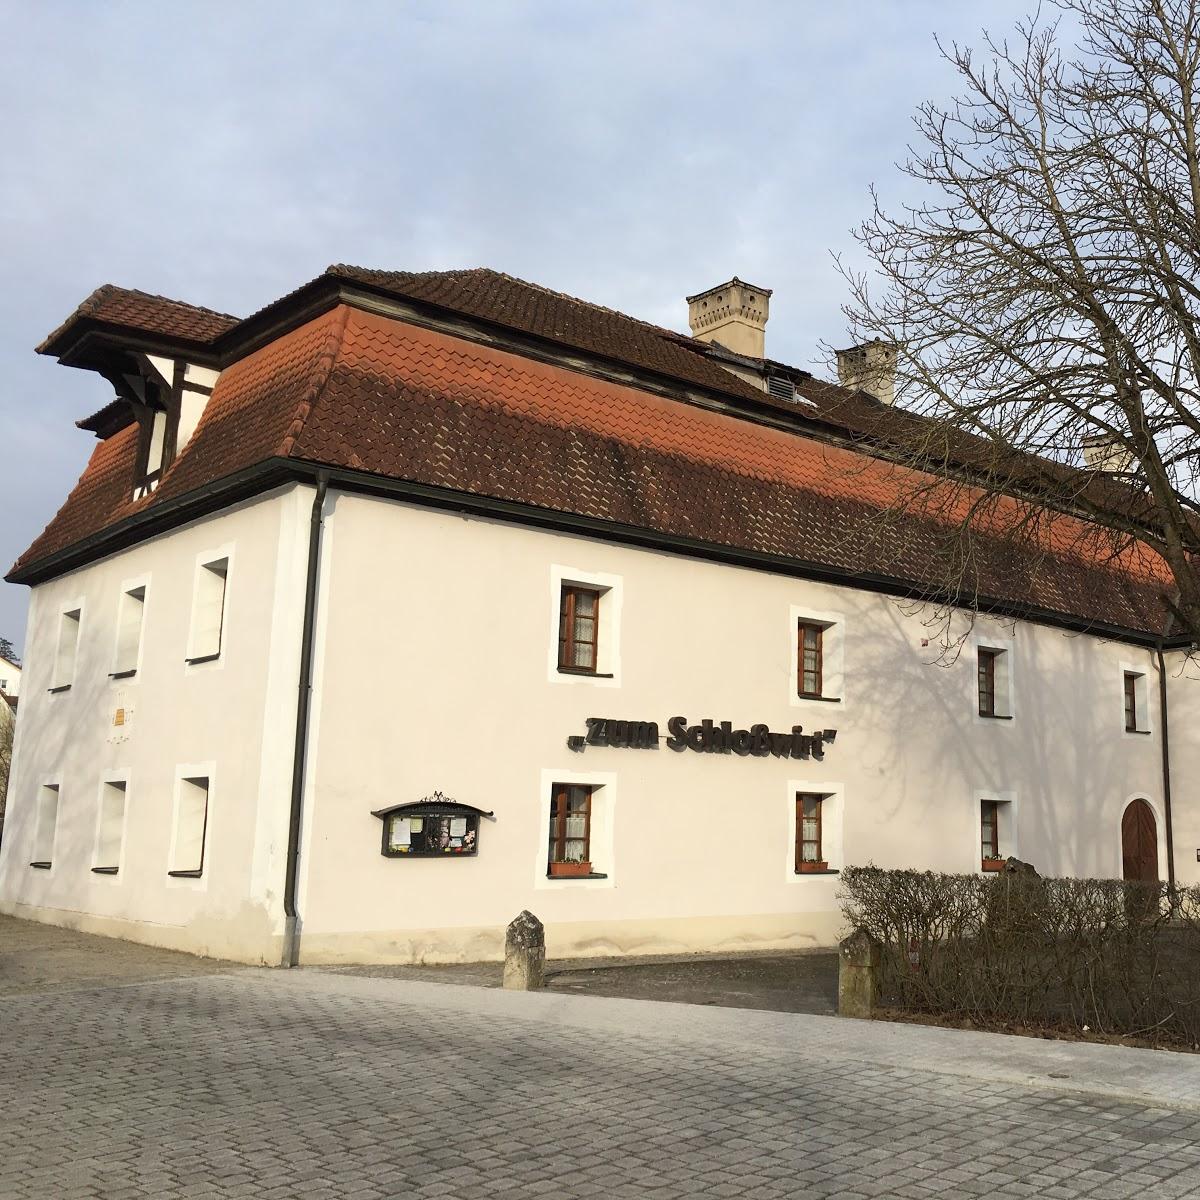 Restaurant "Zum Schloßwirt" in Kümmersbruck